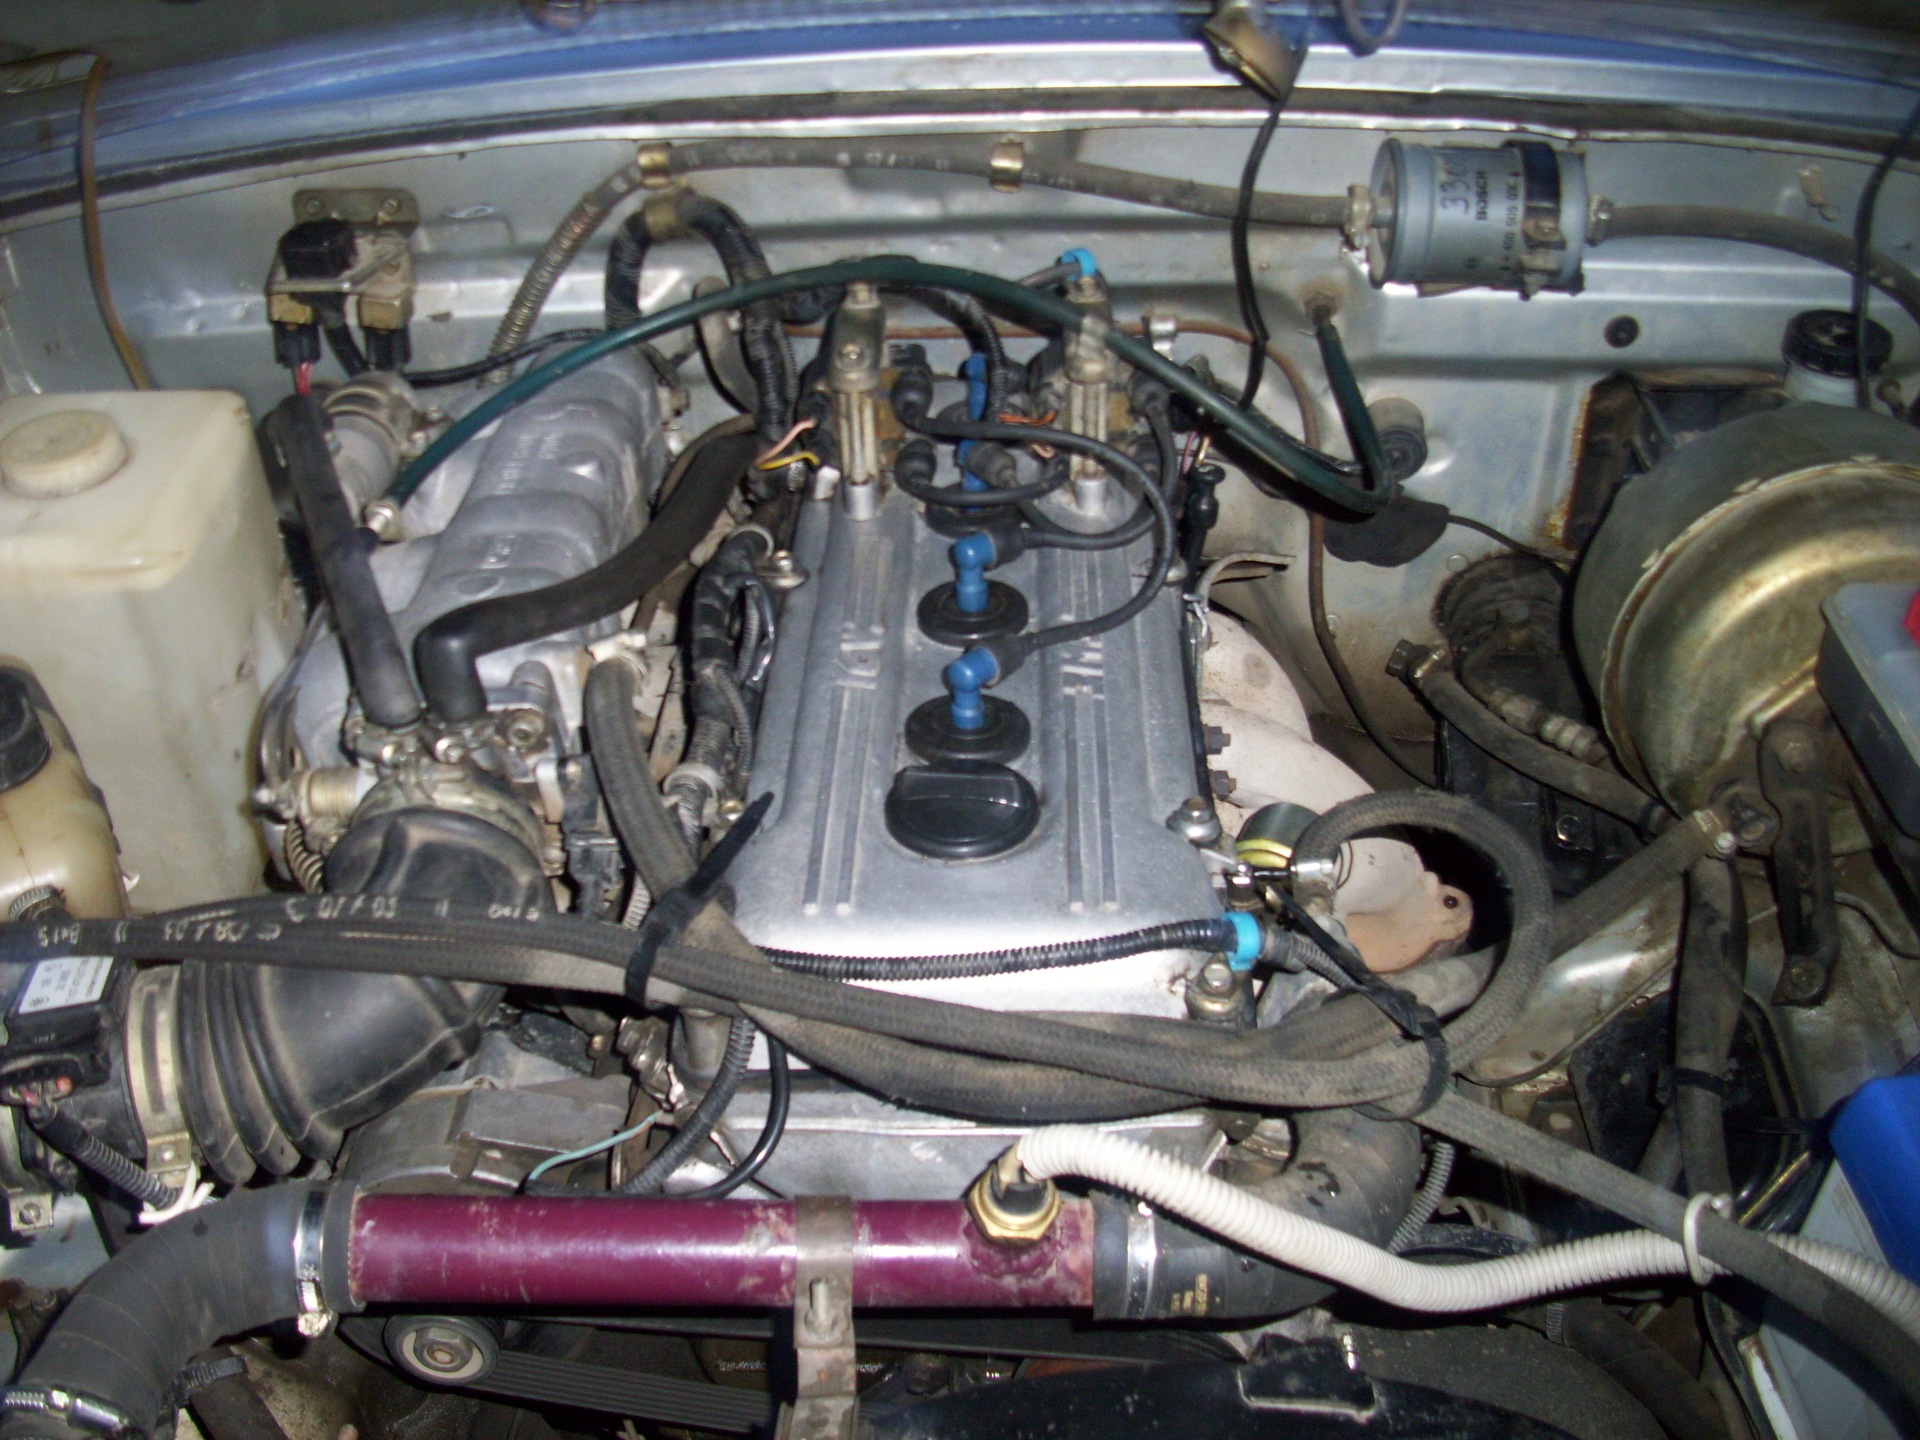 Газ 3110 моторный отсек фото